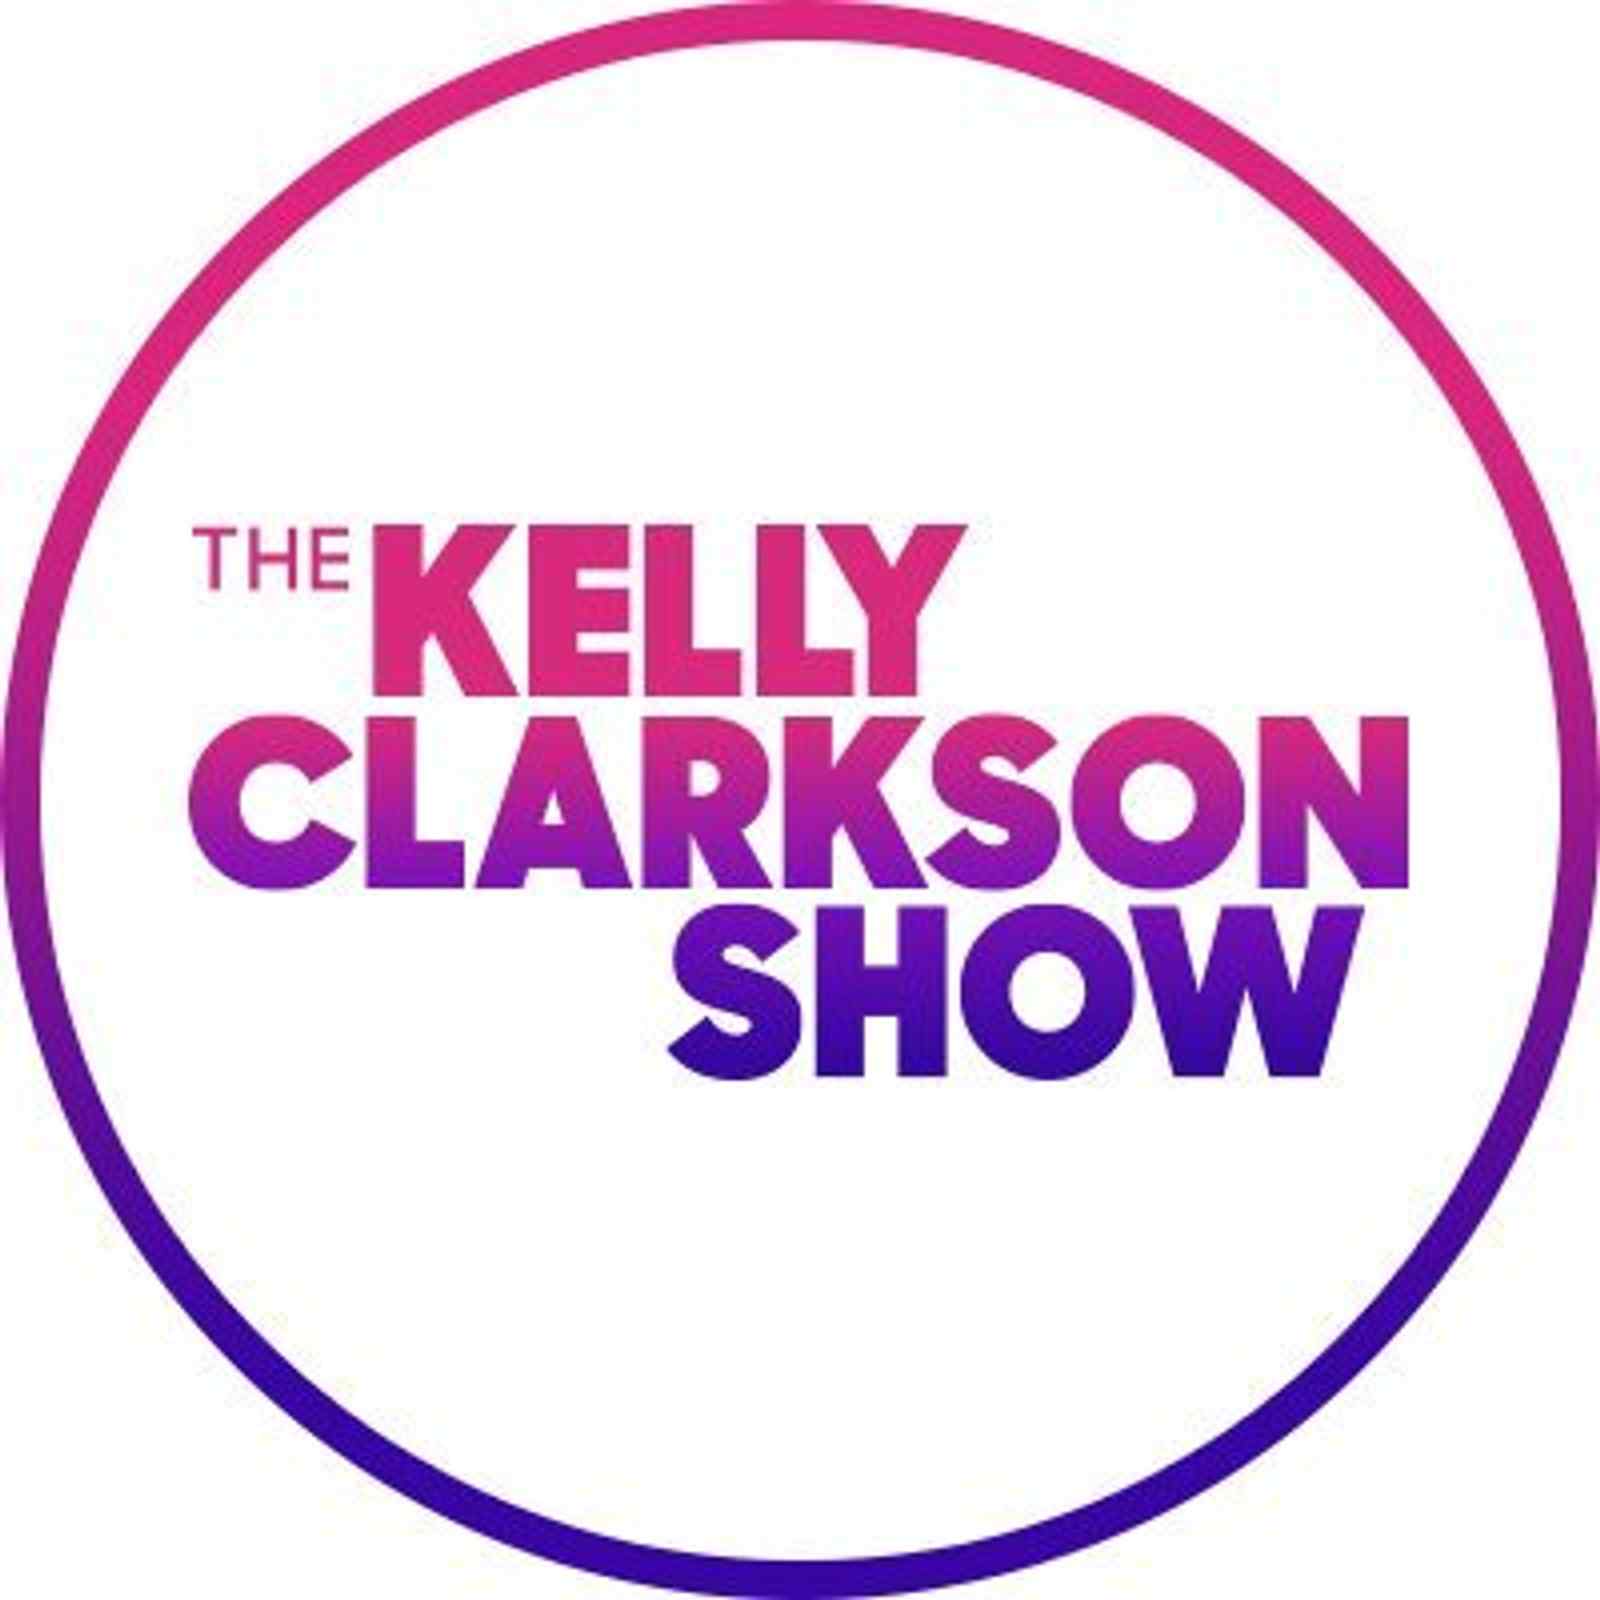 The Kelly Clarkson Show: Trisha Yearwood